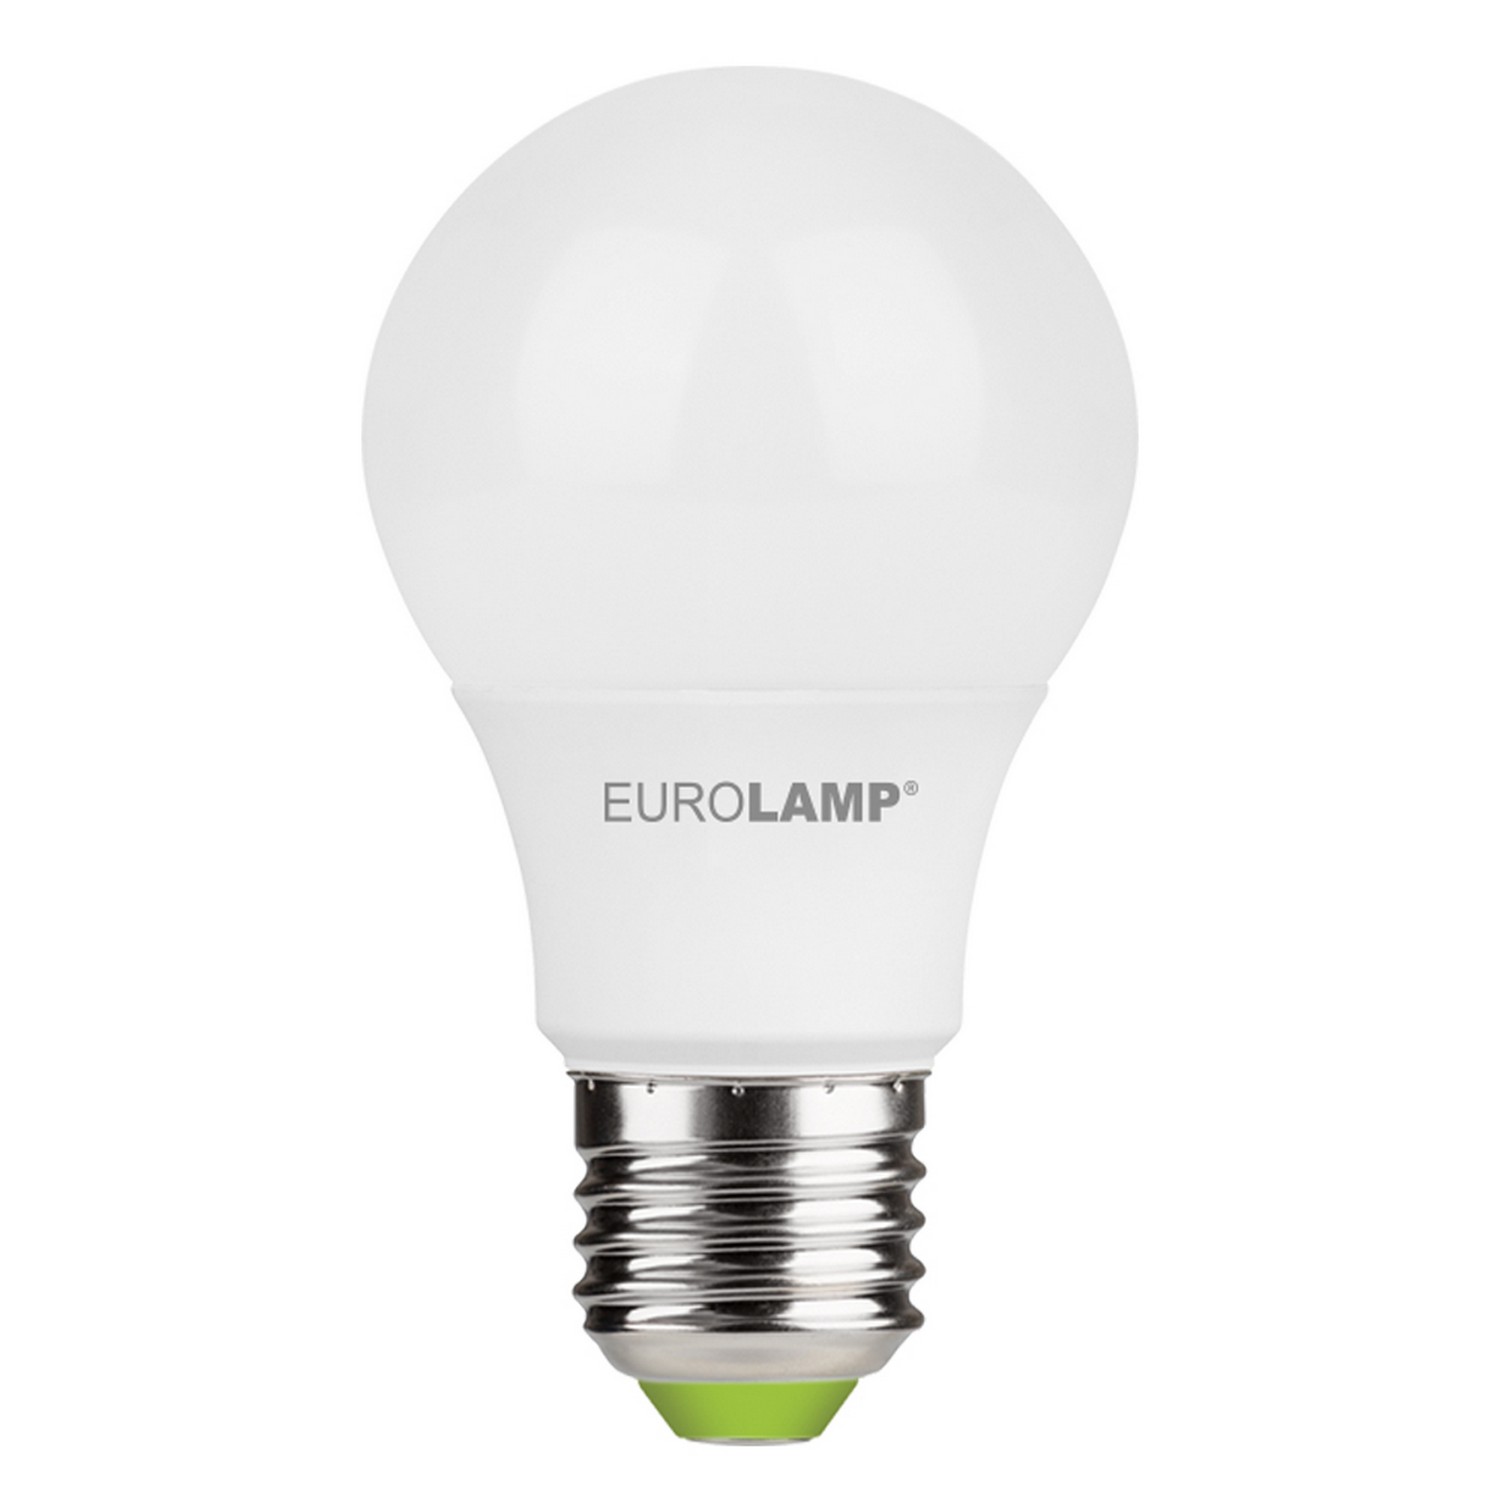 Лампа Eurolamp LED A60 7W E27 3000K акция "1+1" цена 99.00 грн - фотография 2